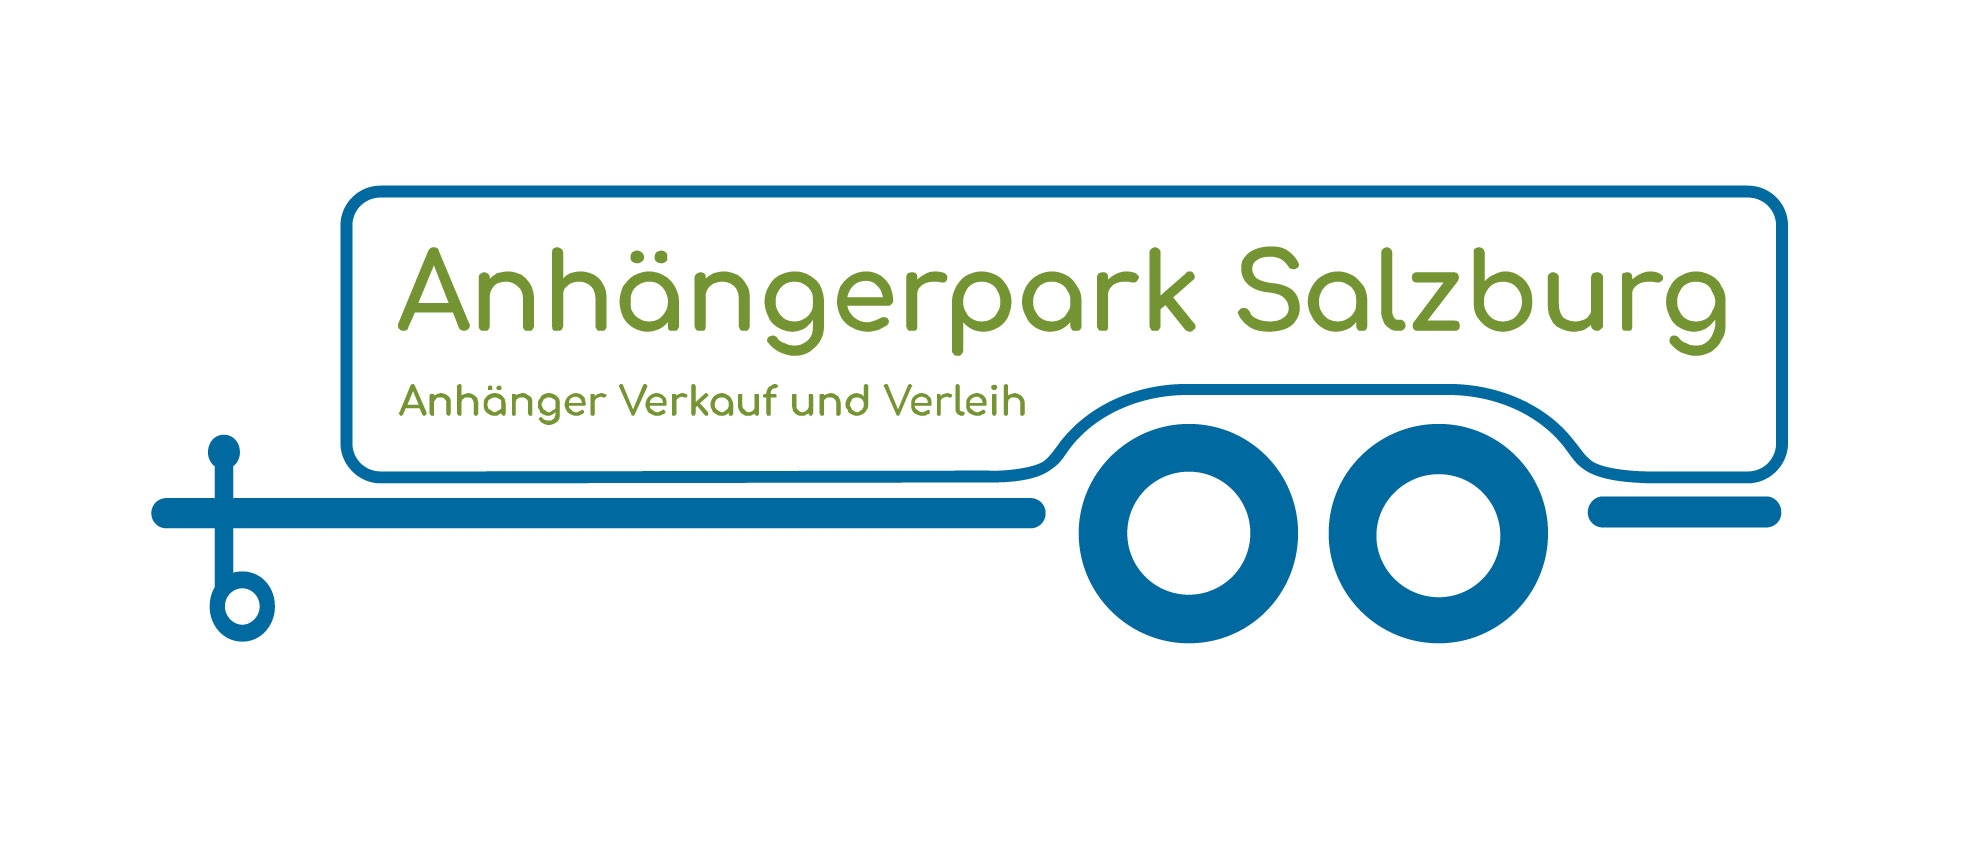 Anhängerpark Salzburg